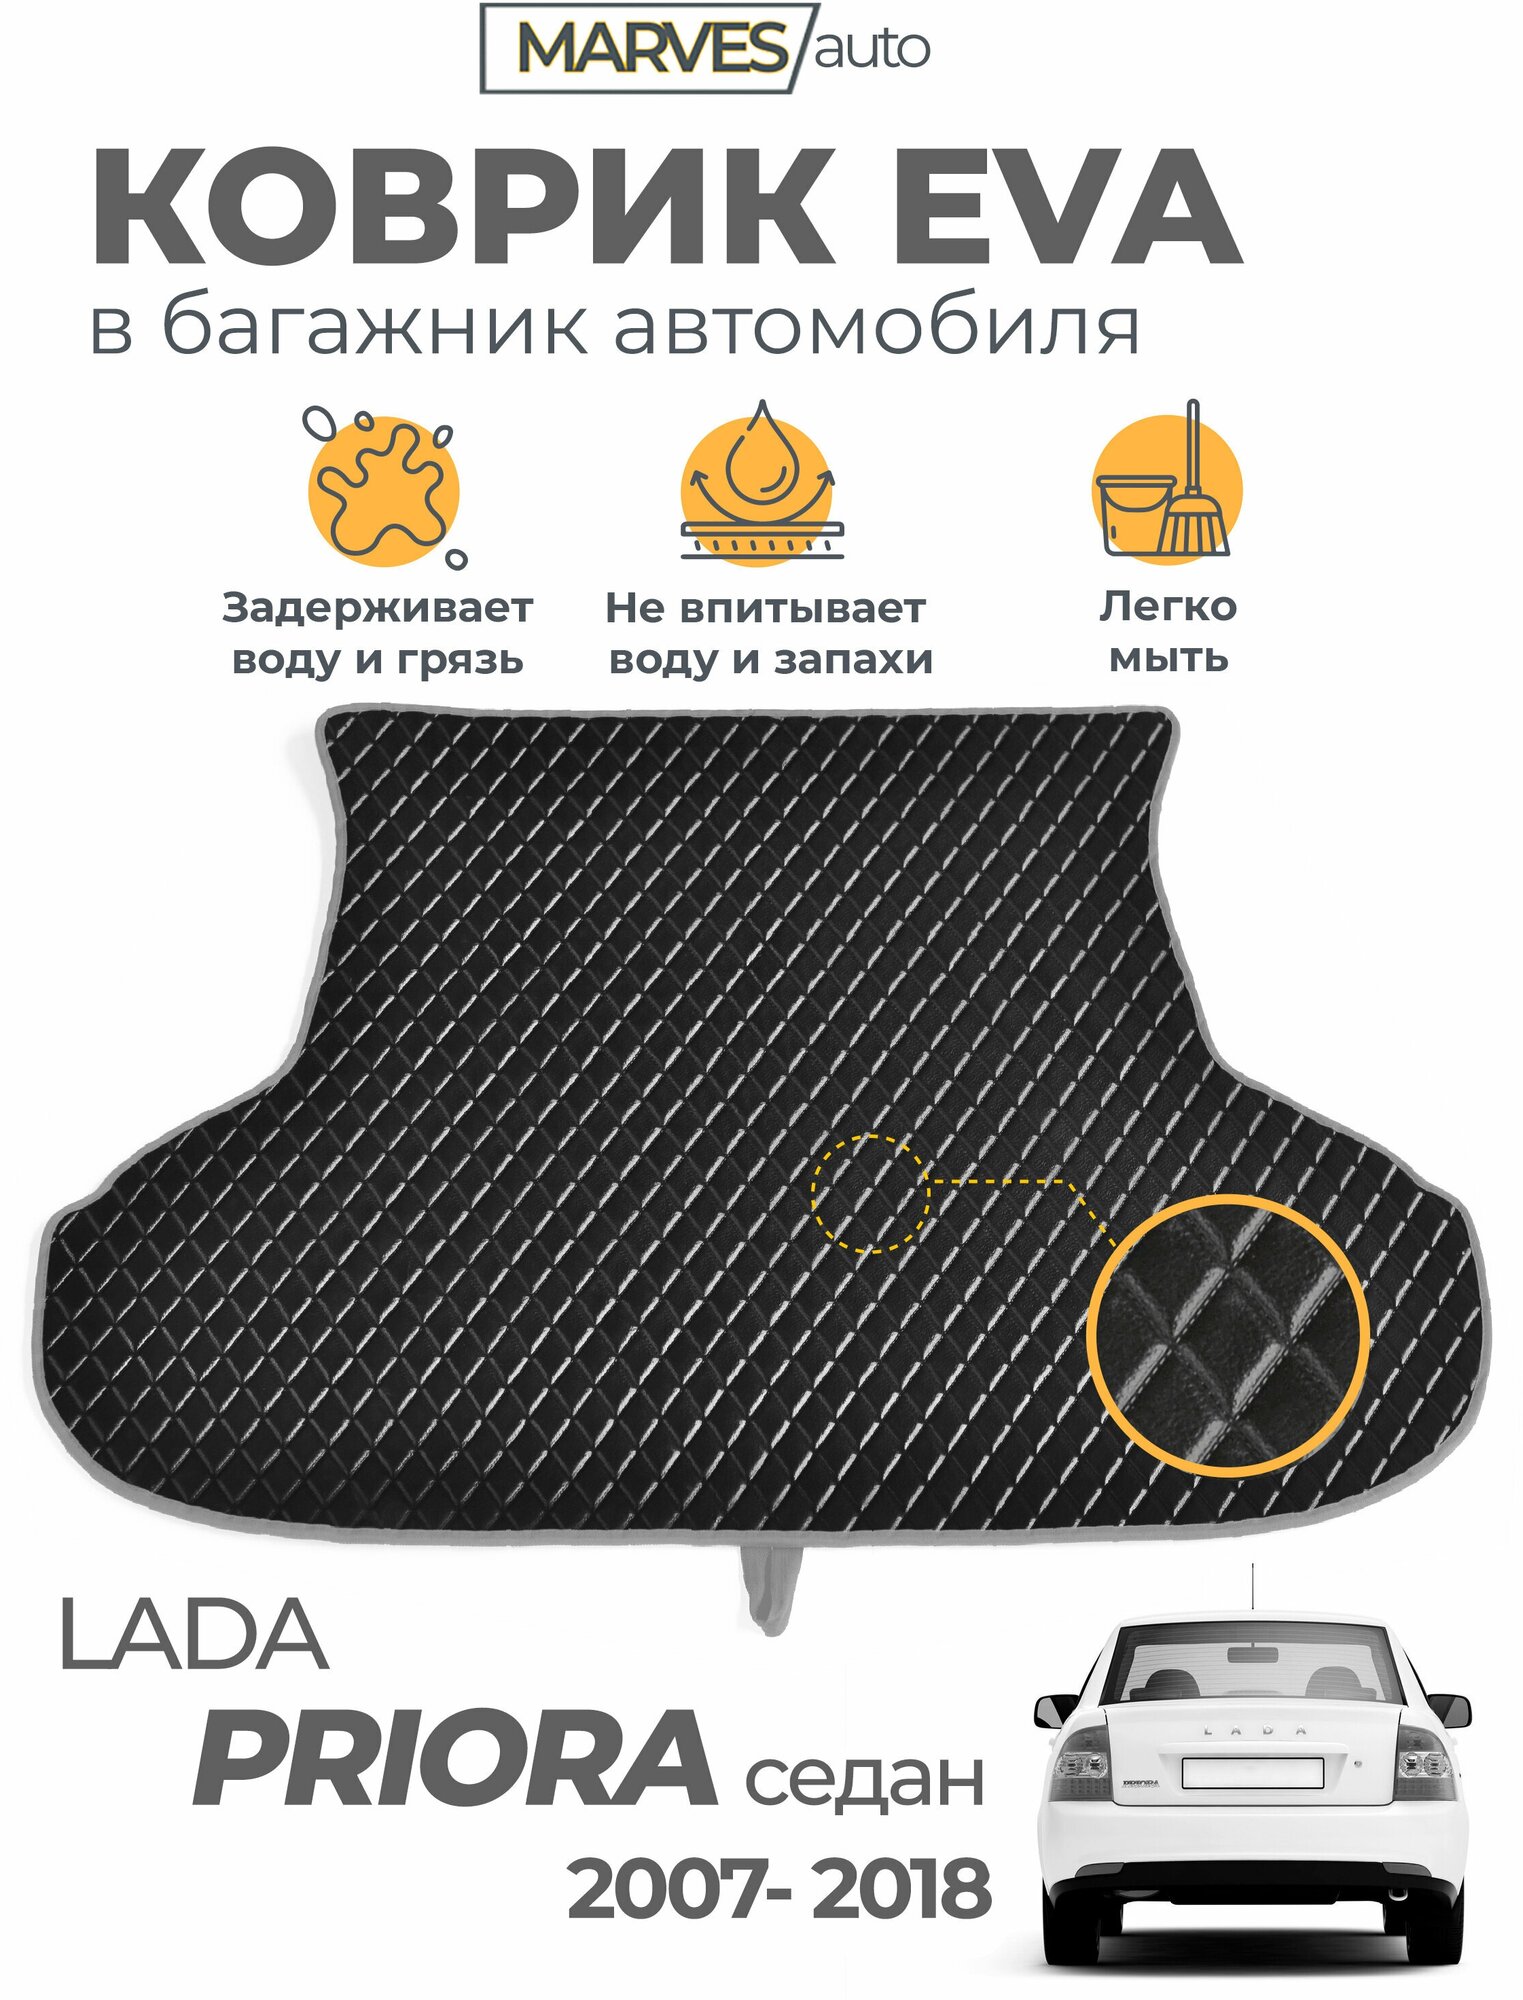 Коврик EVA (ЭВА, ЕВА) для автомобиля Лада Приора седан, ВАЗ 2170 (2007-2018), коврик в багажник, имитация кожи, черный/серый кант